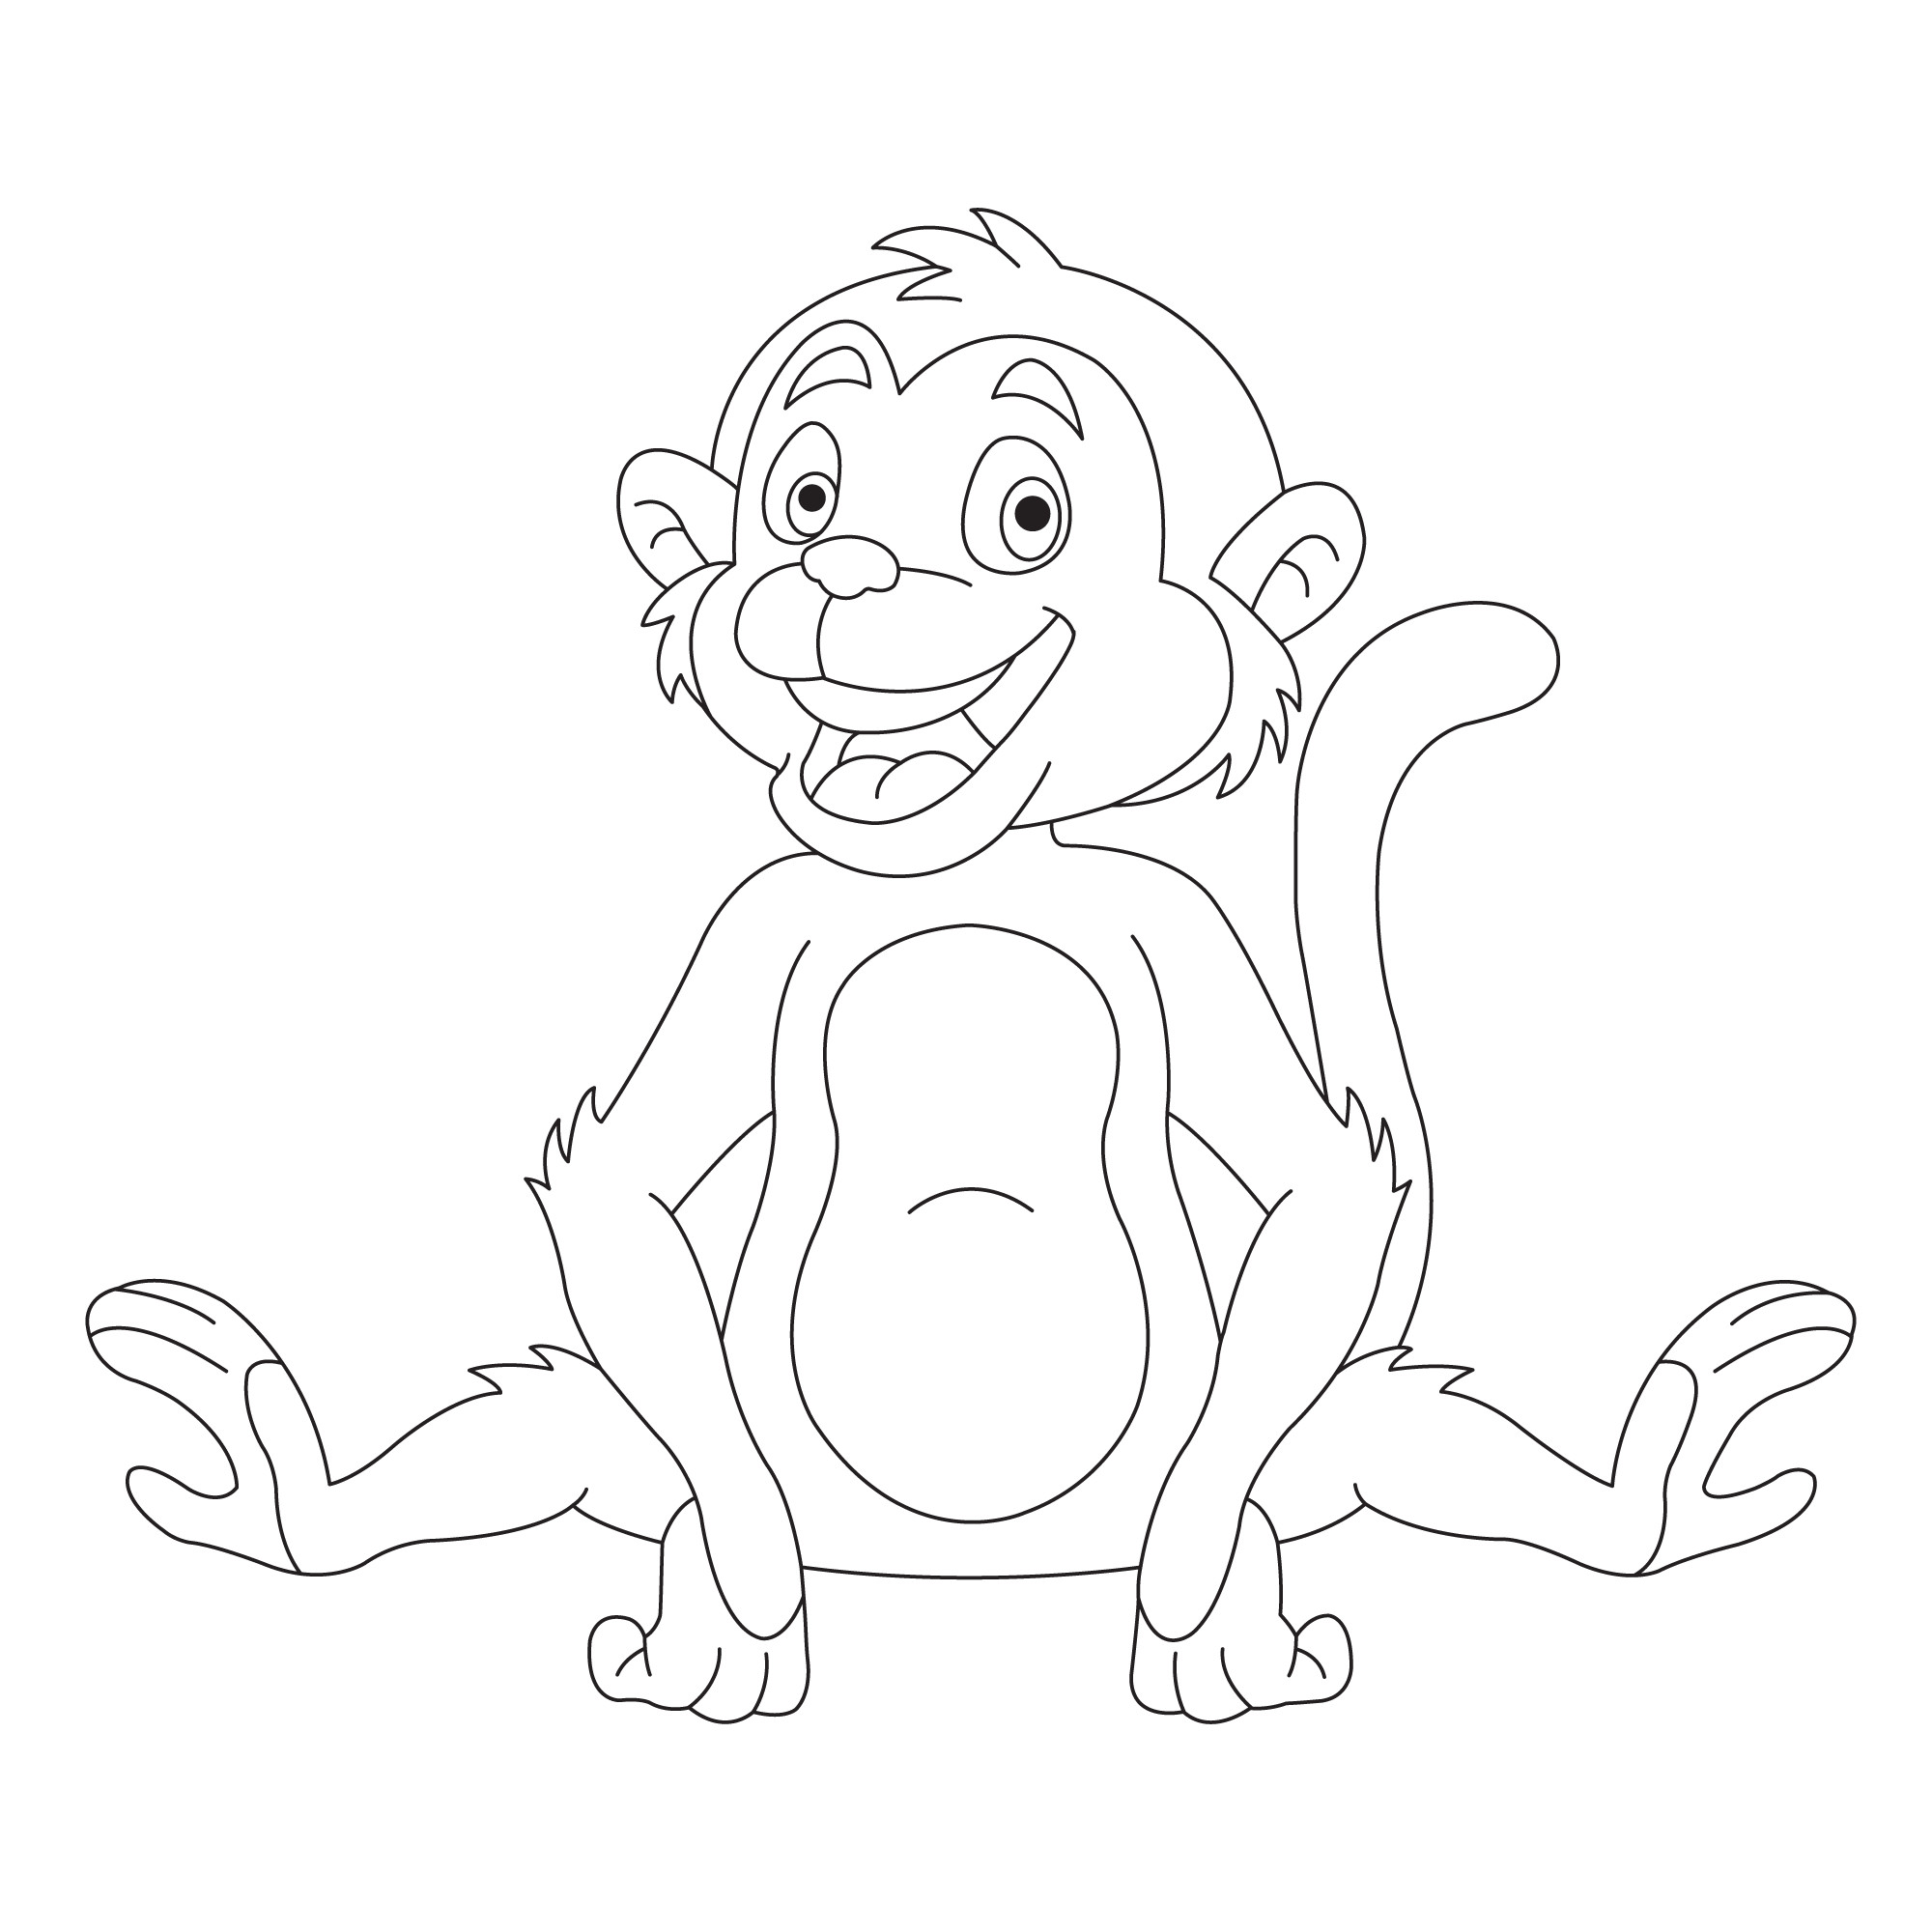 Раскраска для детей: веселая обезьяна сидит и смеется